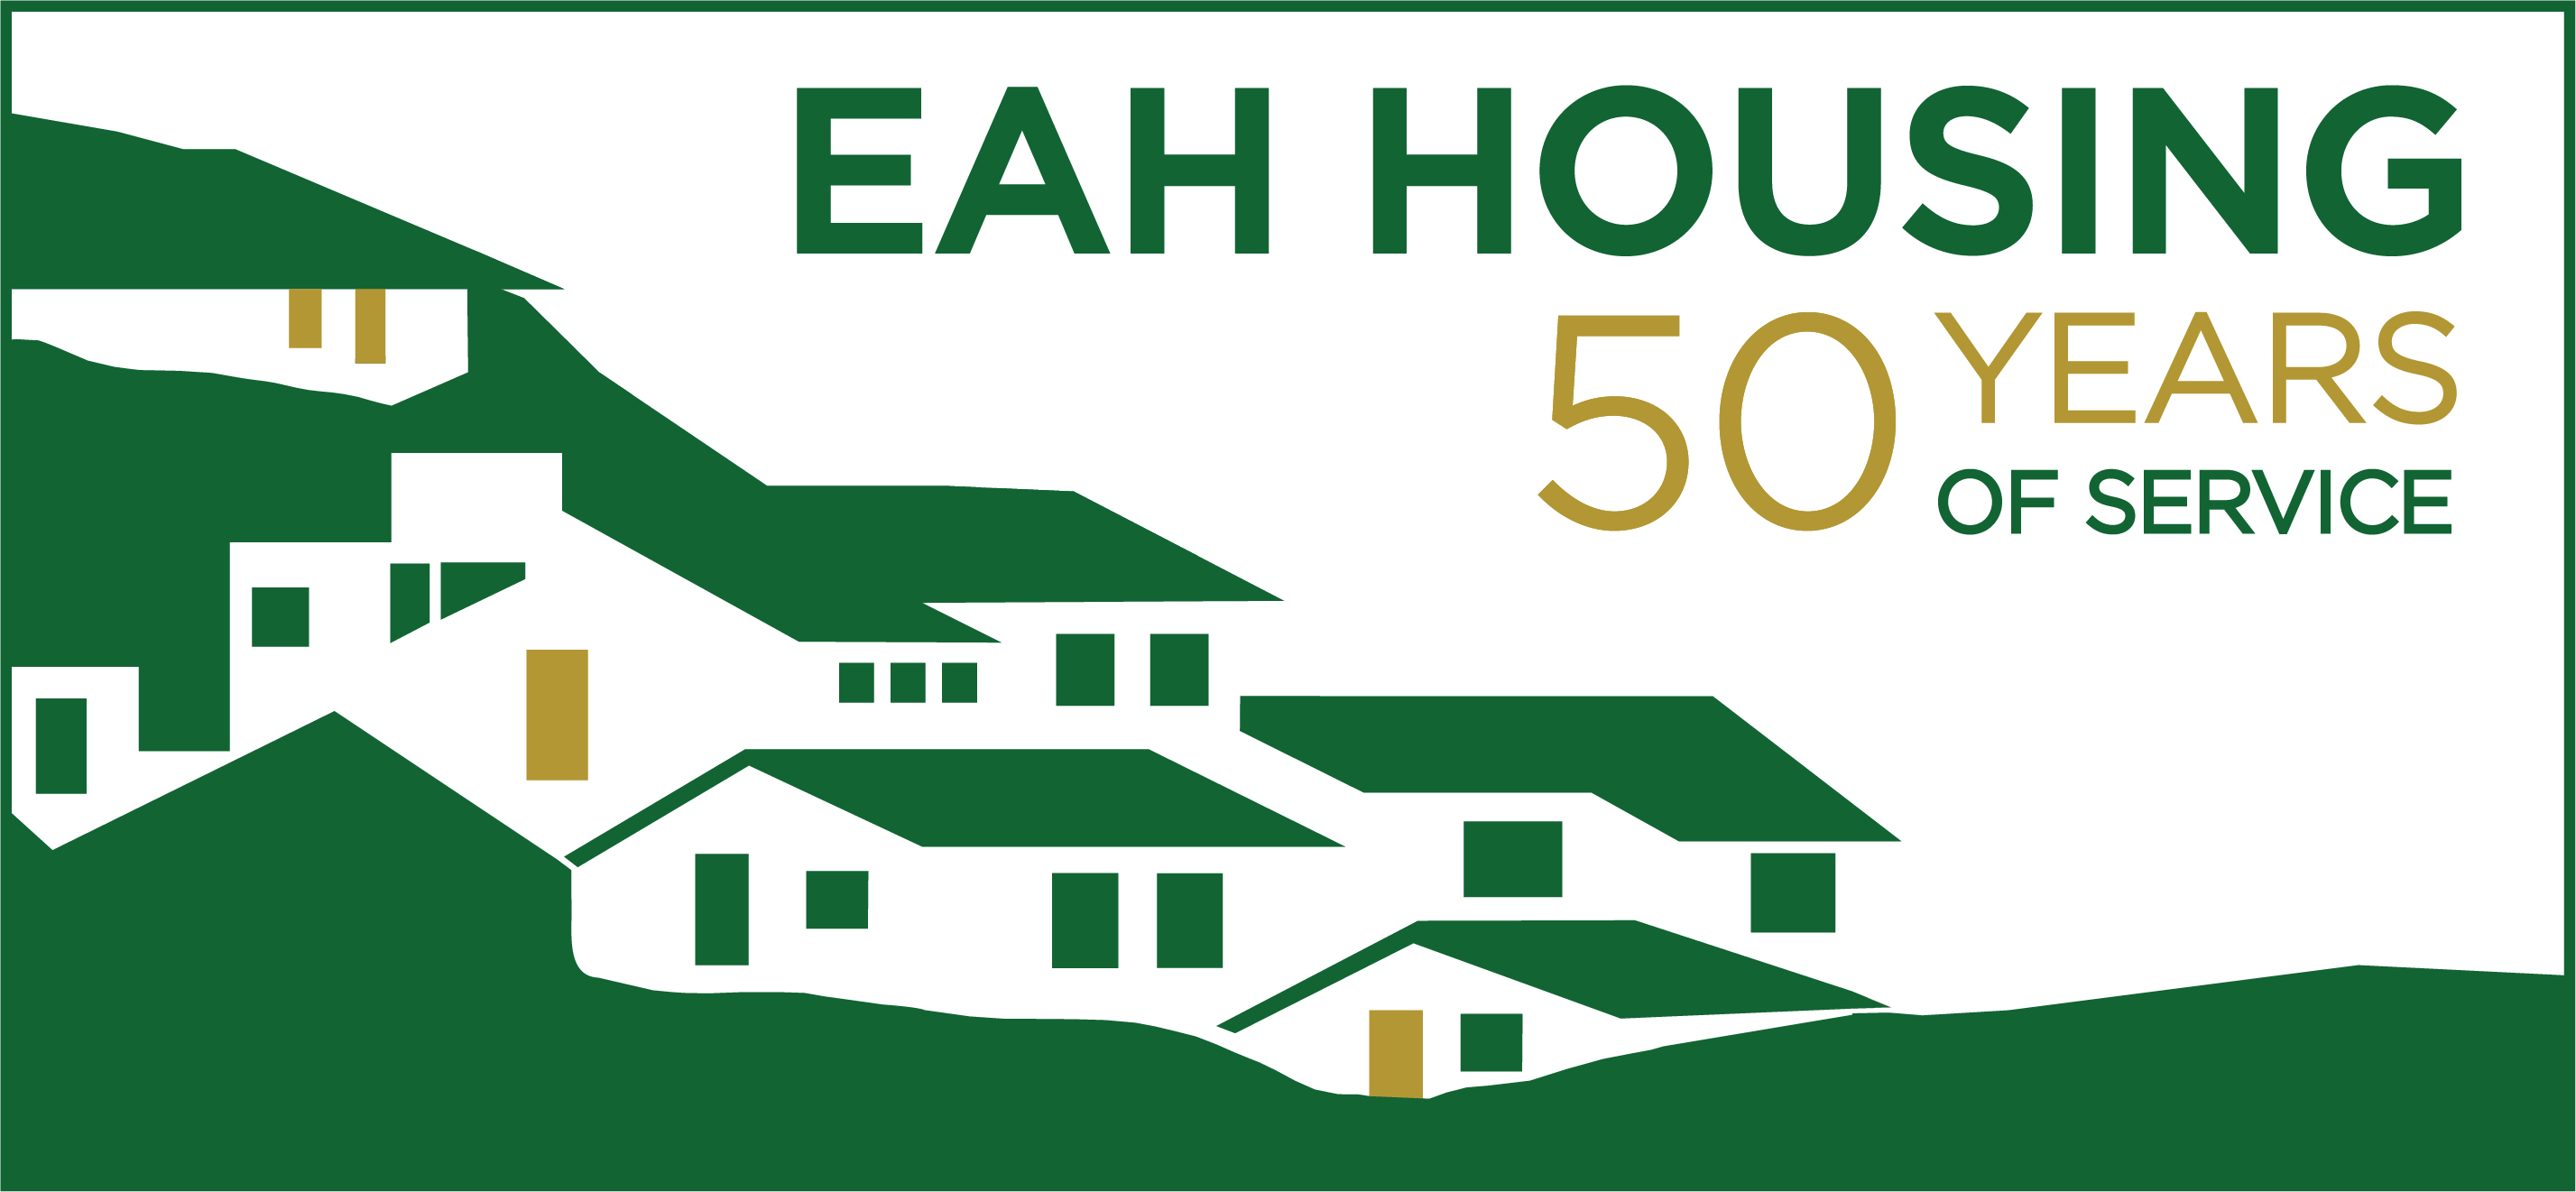 eah-housing-50th-anniversary